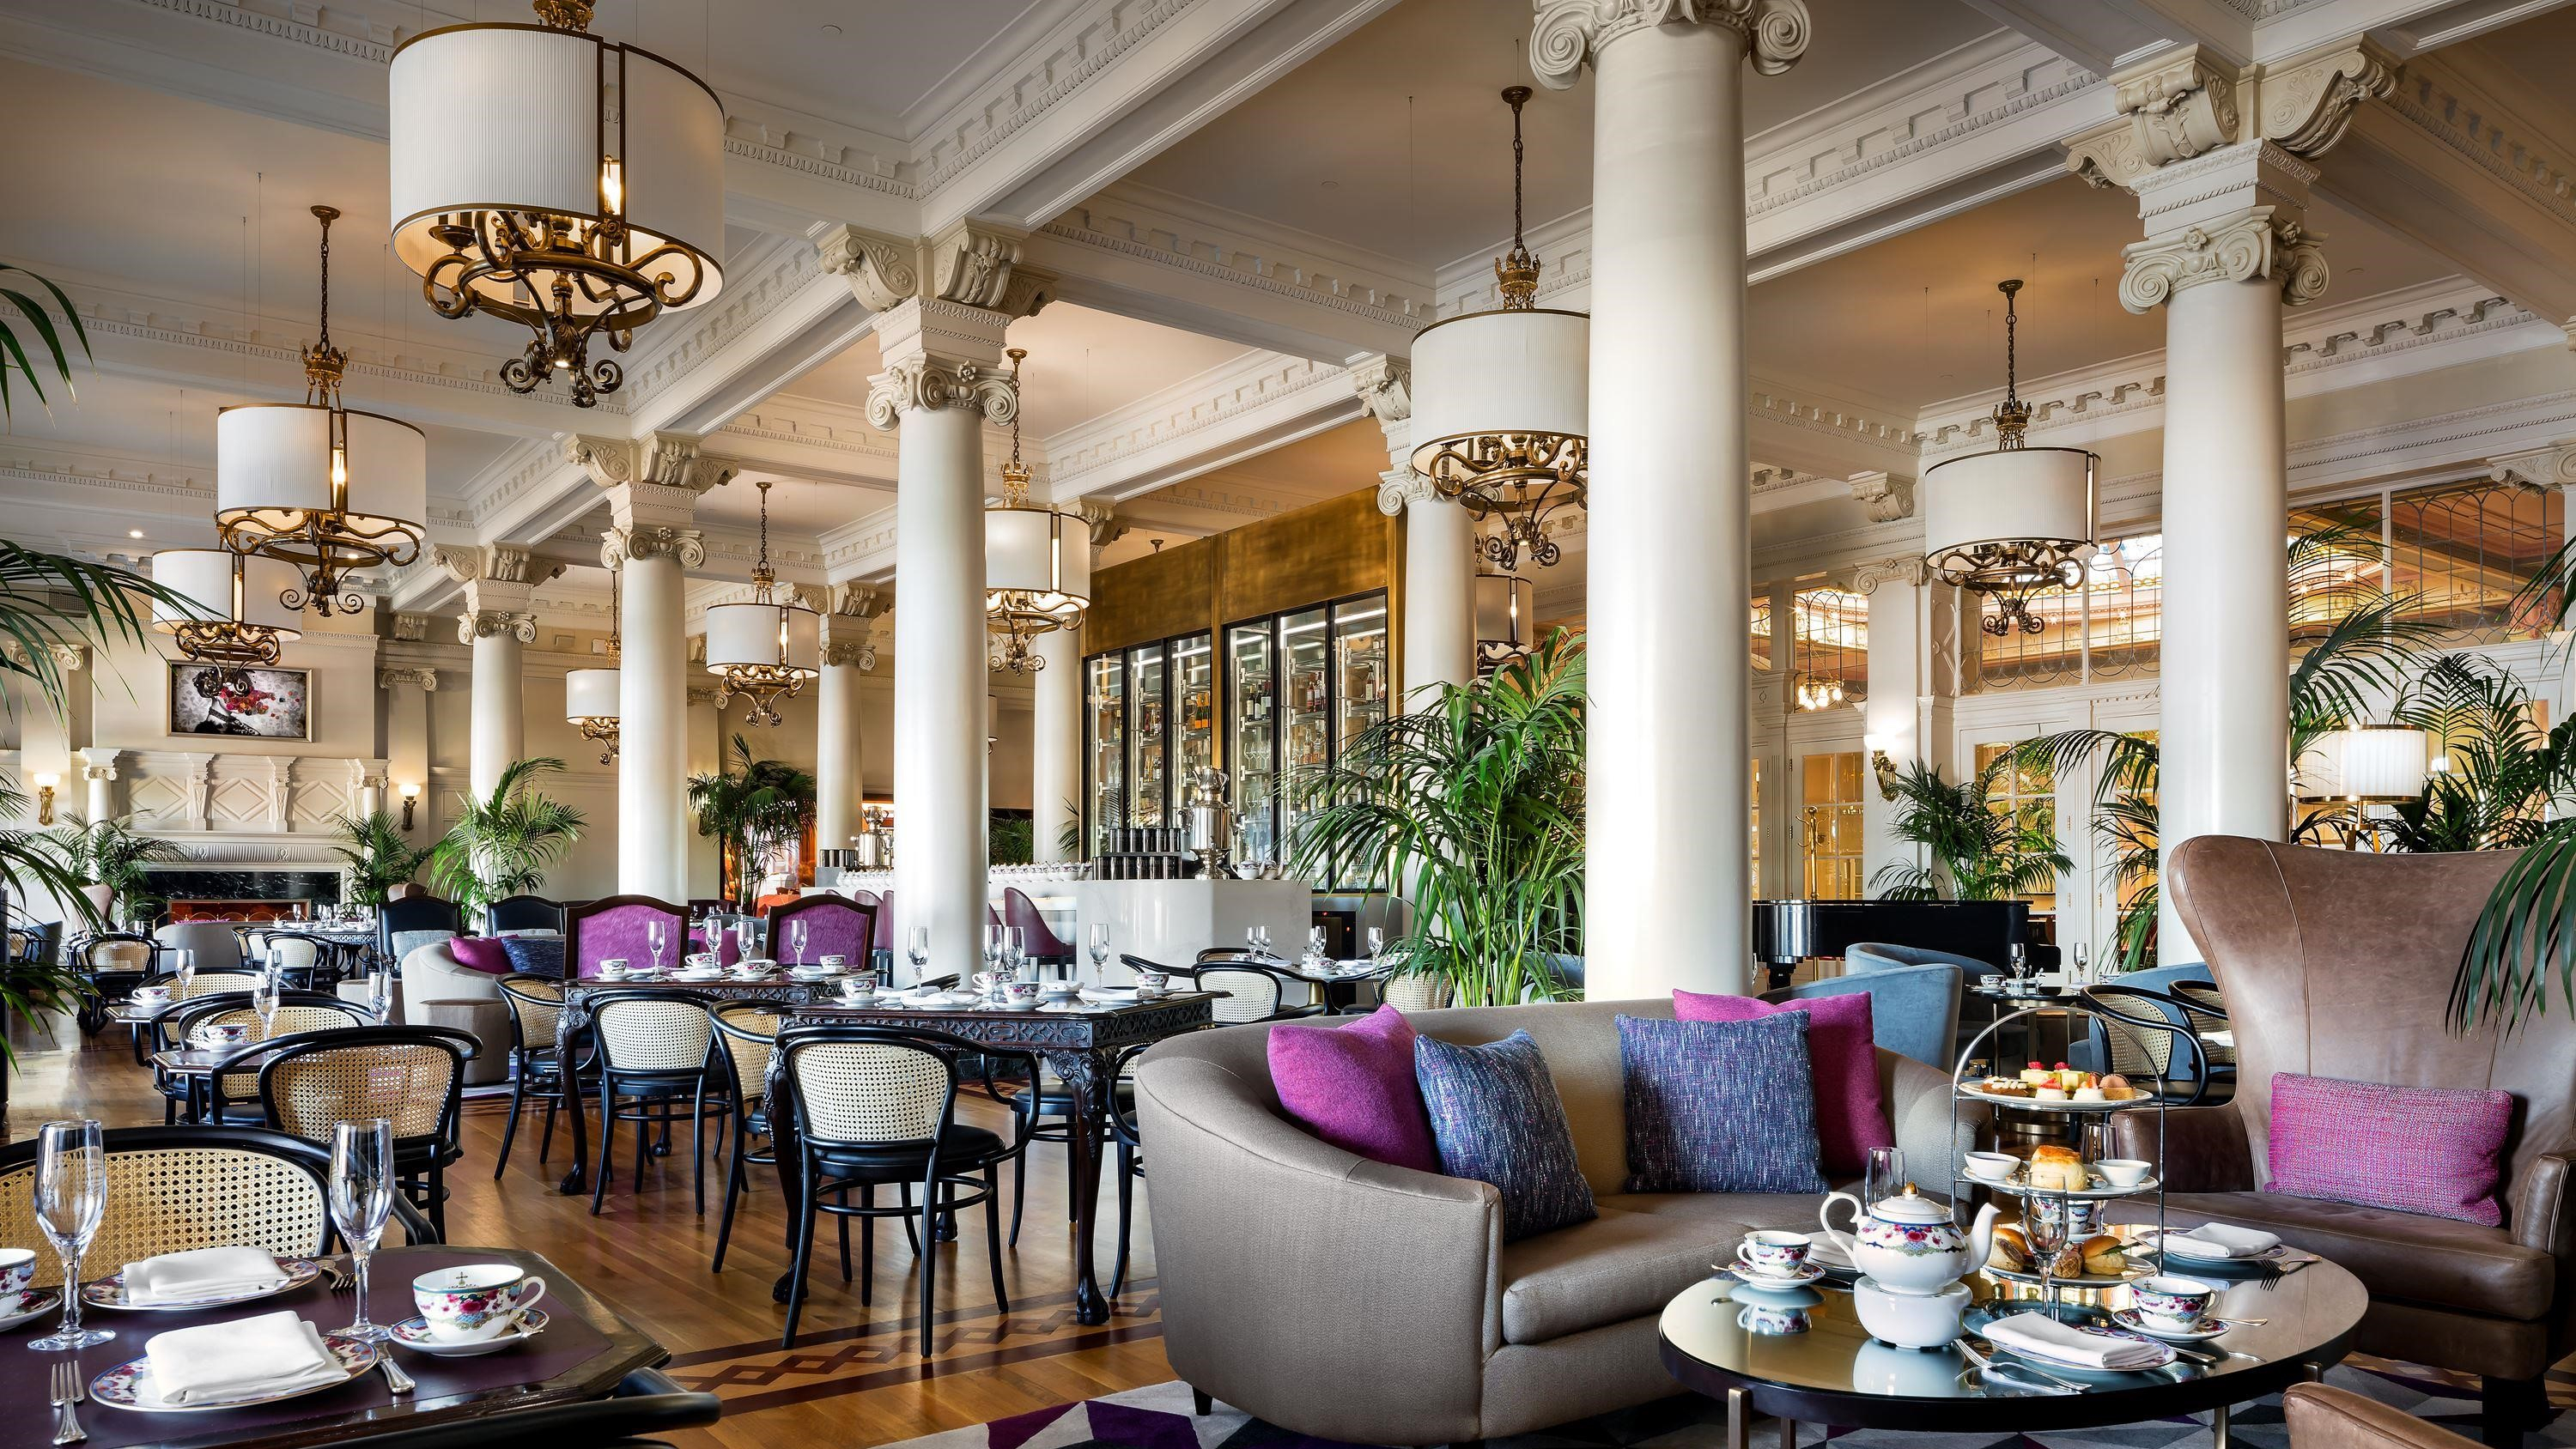 France's Most Famous Tea House Brings Tea Savoir Faire to London